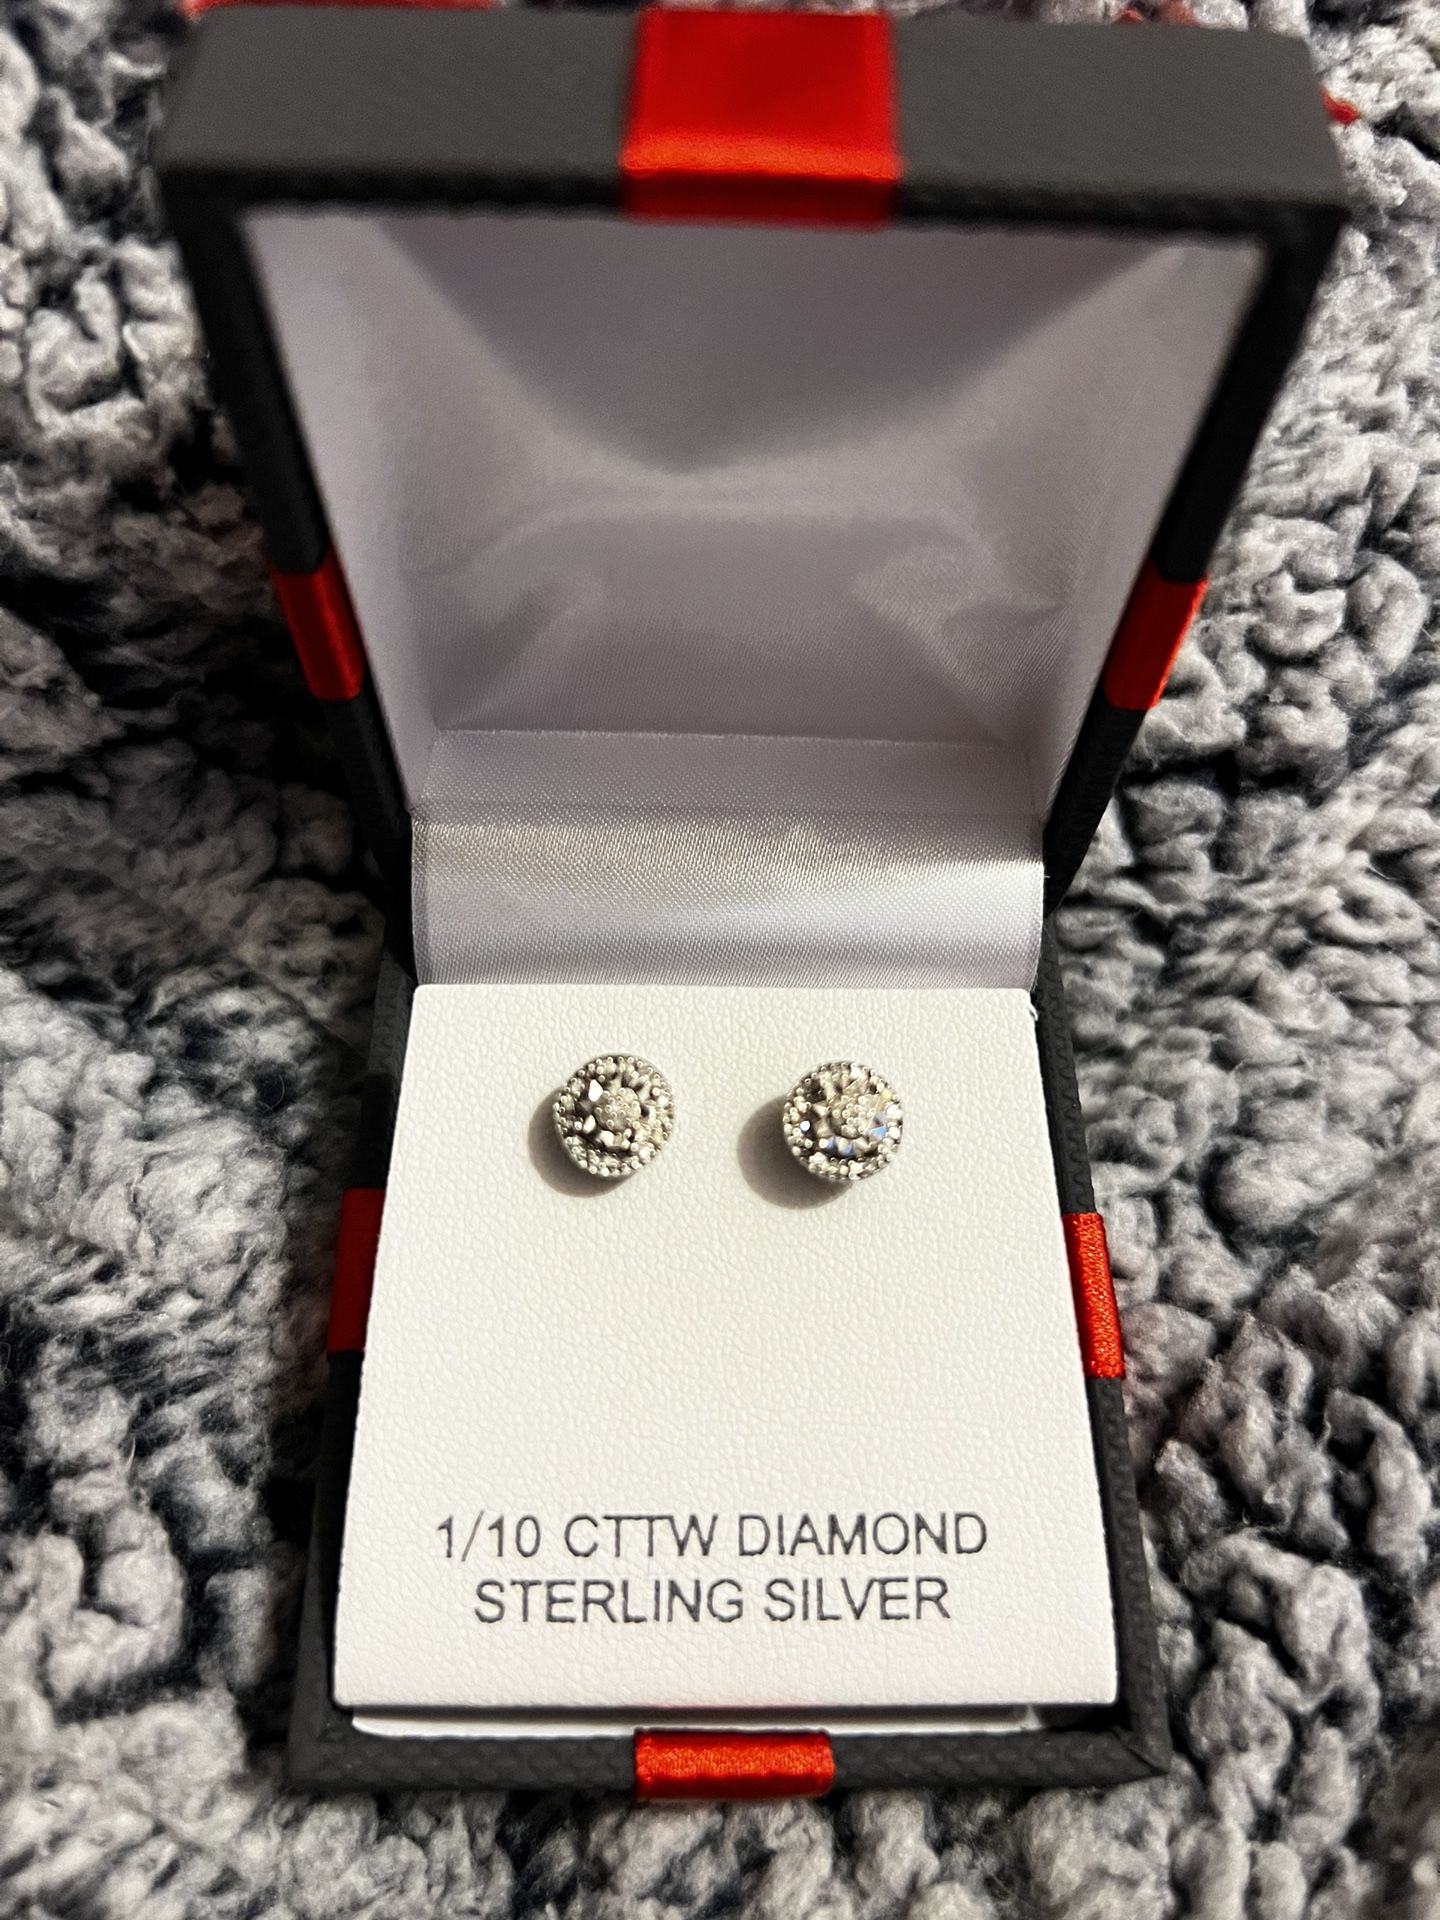 1/10 CTTW Diamond Sterling Silver Stud Earrings